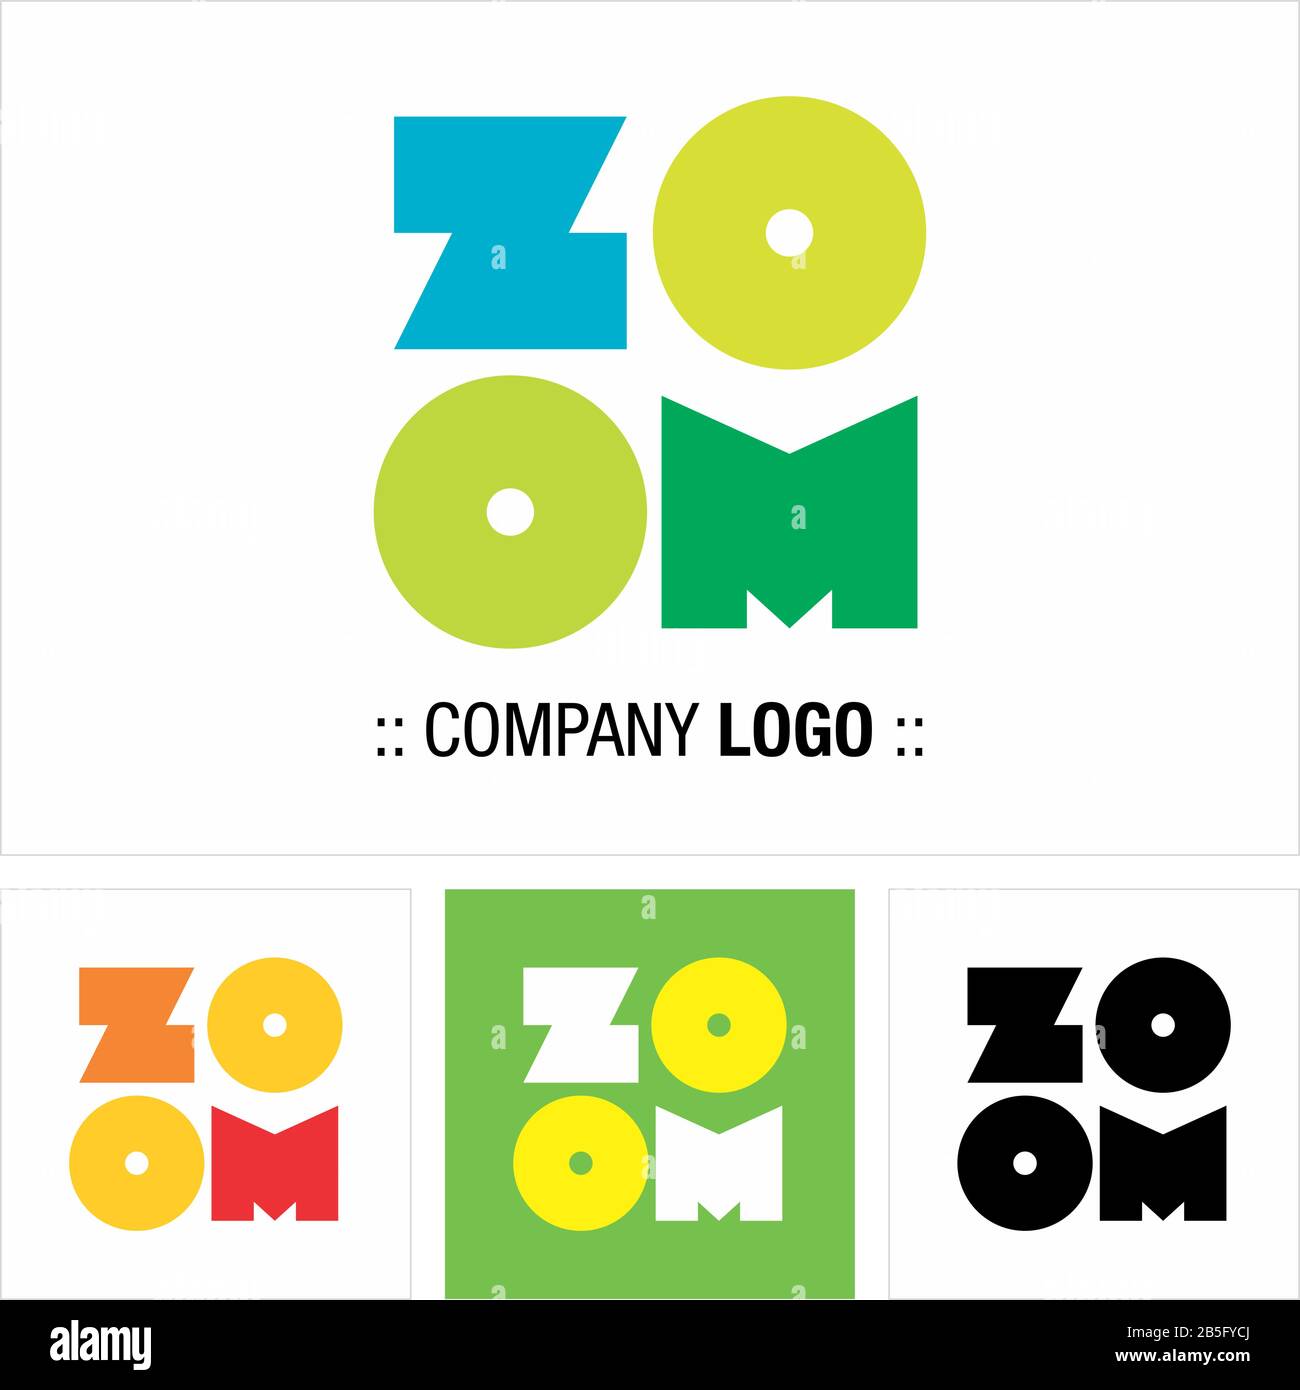 Zoom Typographie Vector Symbol Company Logo. Icône De Texte Logotype De Style. Illustration De La Lettre Géométrique En Gras. Design Élégant Et Coloré De Concept D'Identité Illustration de Vecteur